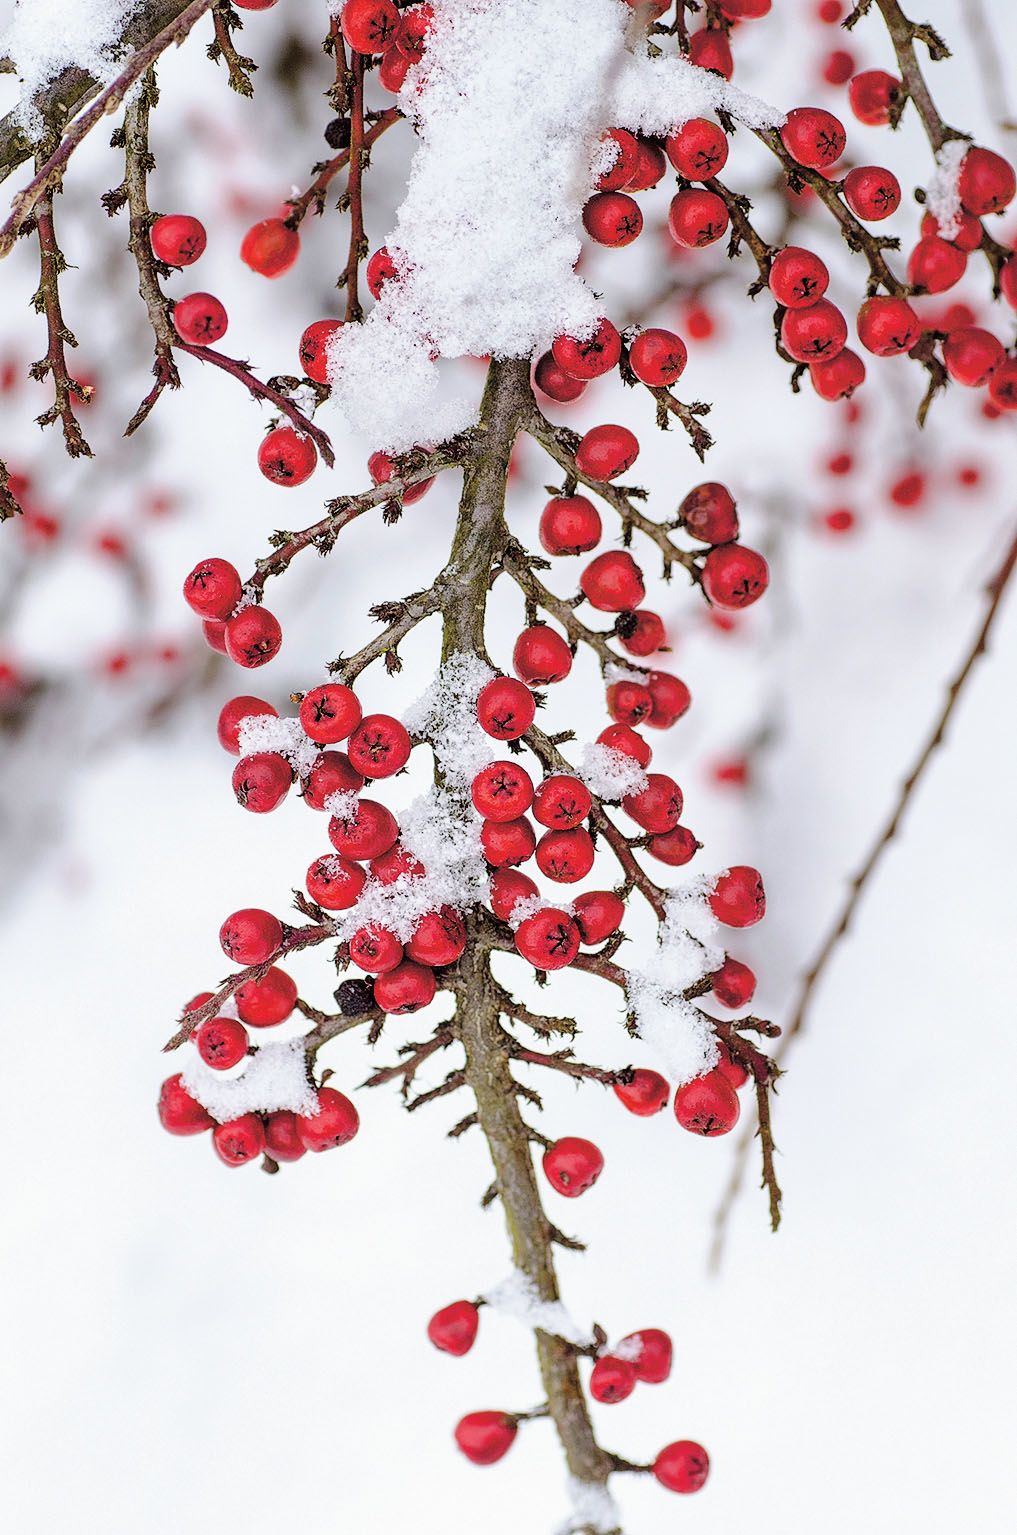 Plody skladníku (Cotoneaster). Z větví visí tak dlouho, dokud je ptáci nespolykají. Klidně i celou zimu.